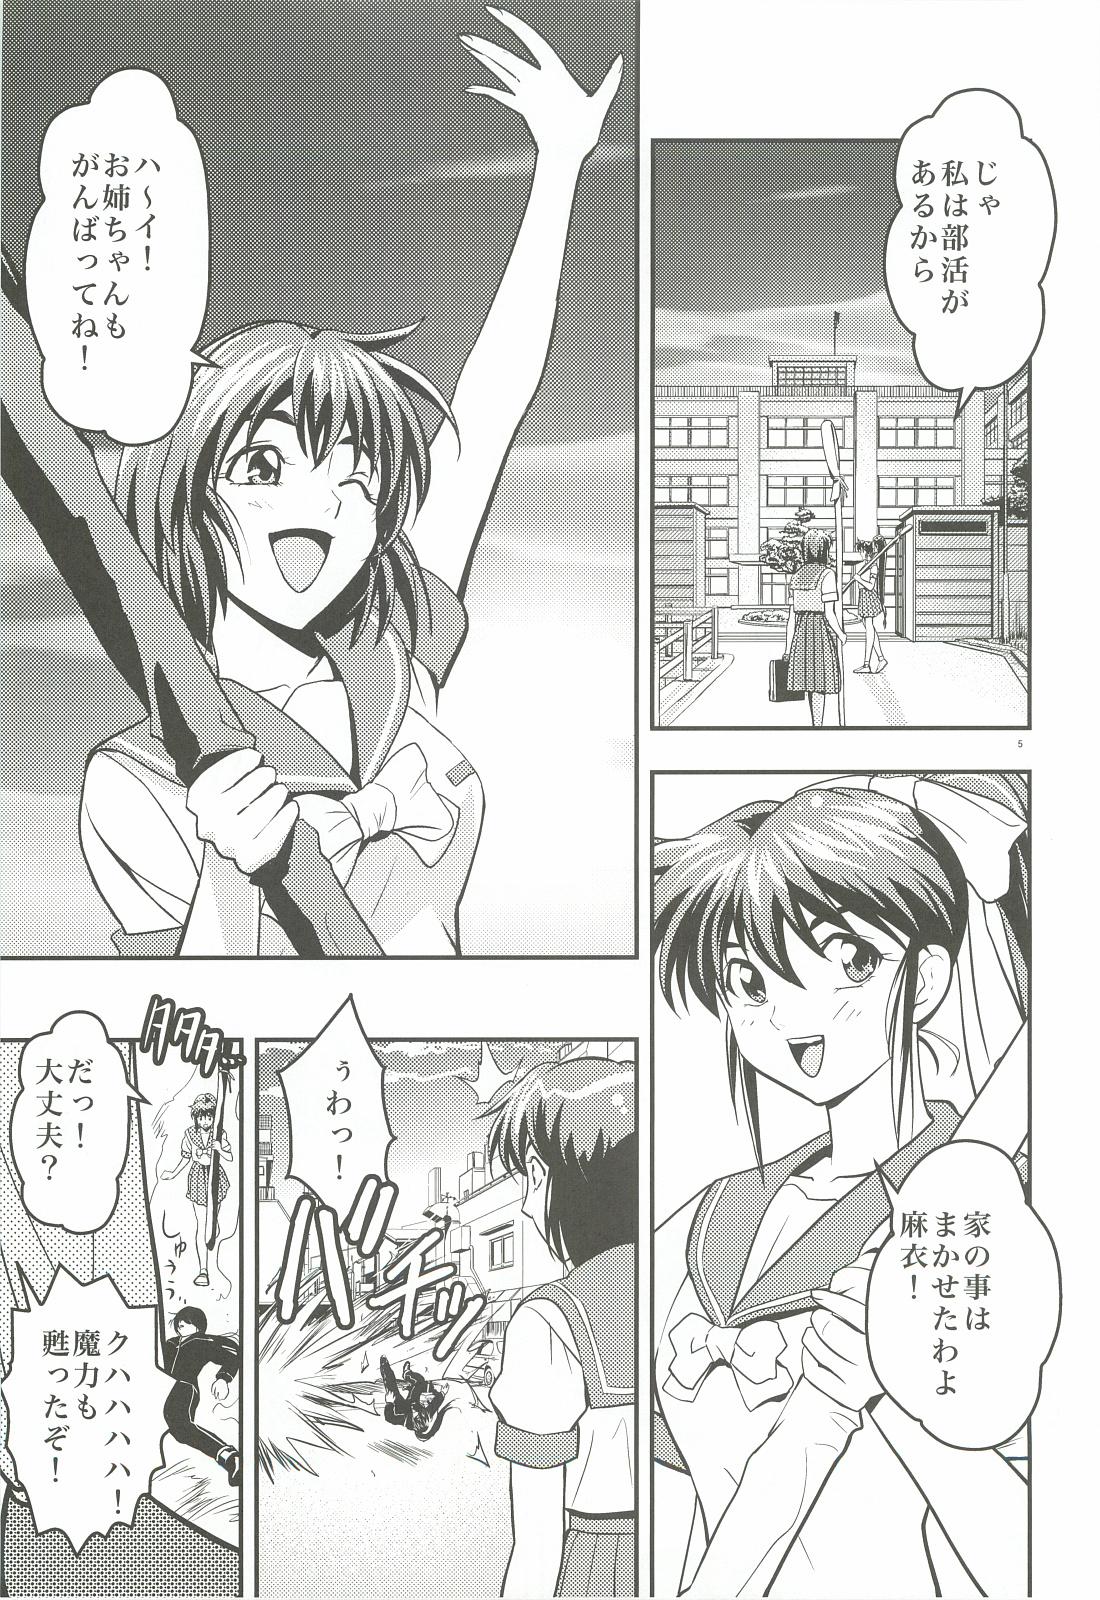 Longhair FallenXXangeL 1 Ingyaku no Mai Joukan - Twin angels Gagging - Page 4